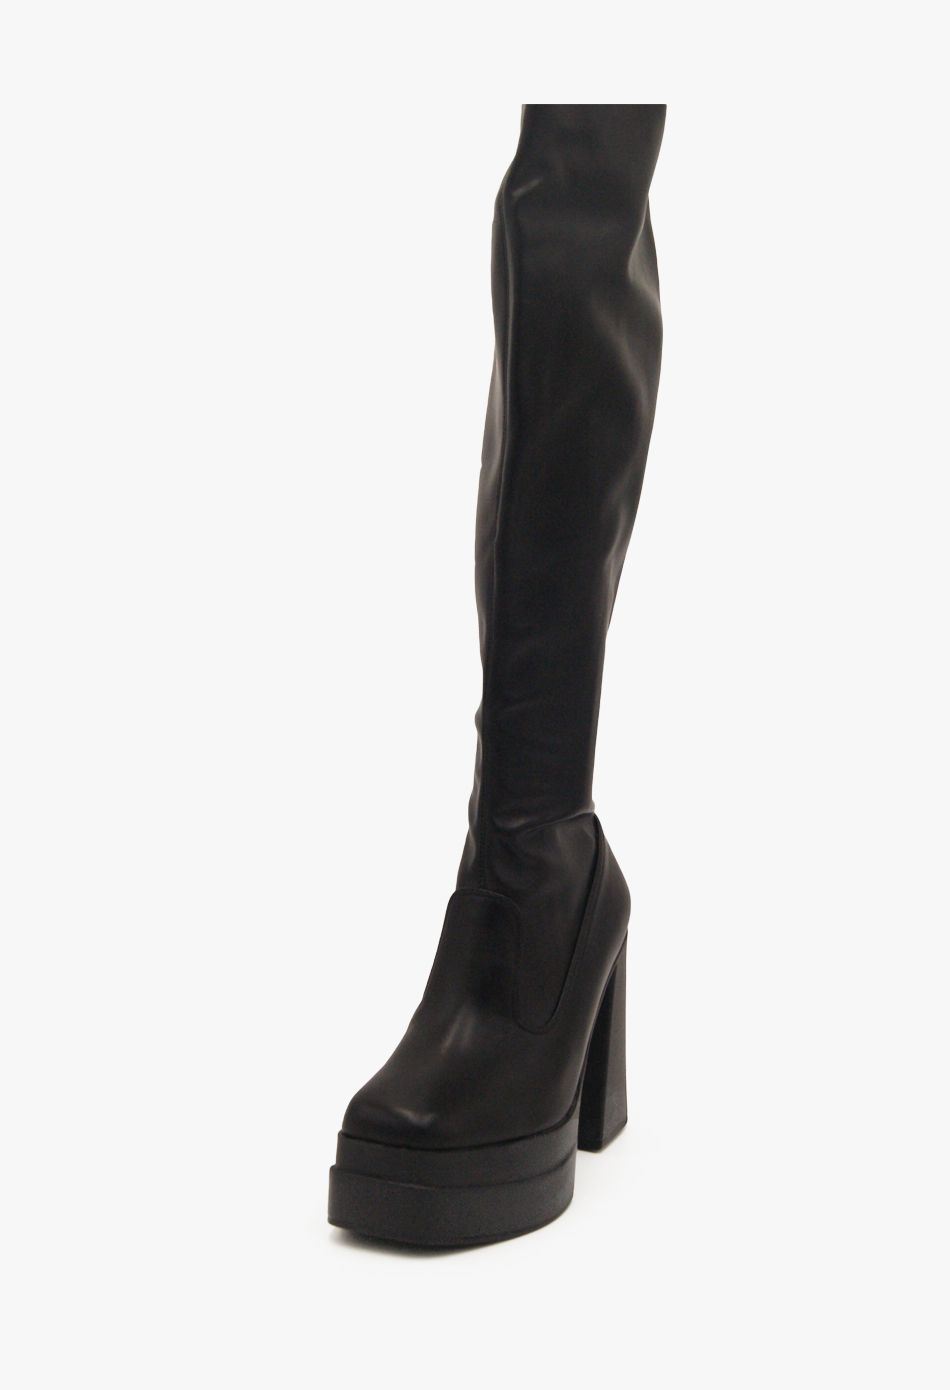 Μπότες Κάλτσα Over the Knee με Χοντρό Ψηλό Τακούνι Μαύρο / B5937-black Γυναικεία Mπότες joya.gr